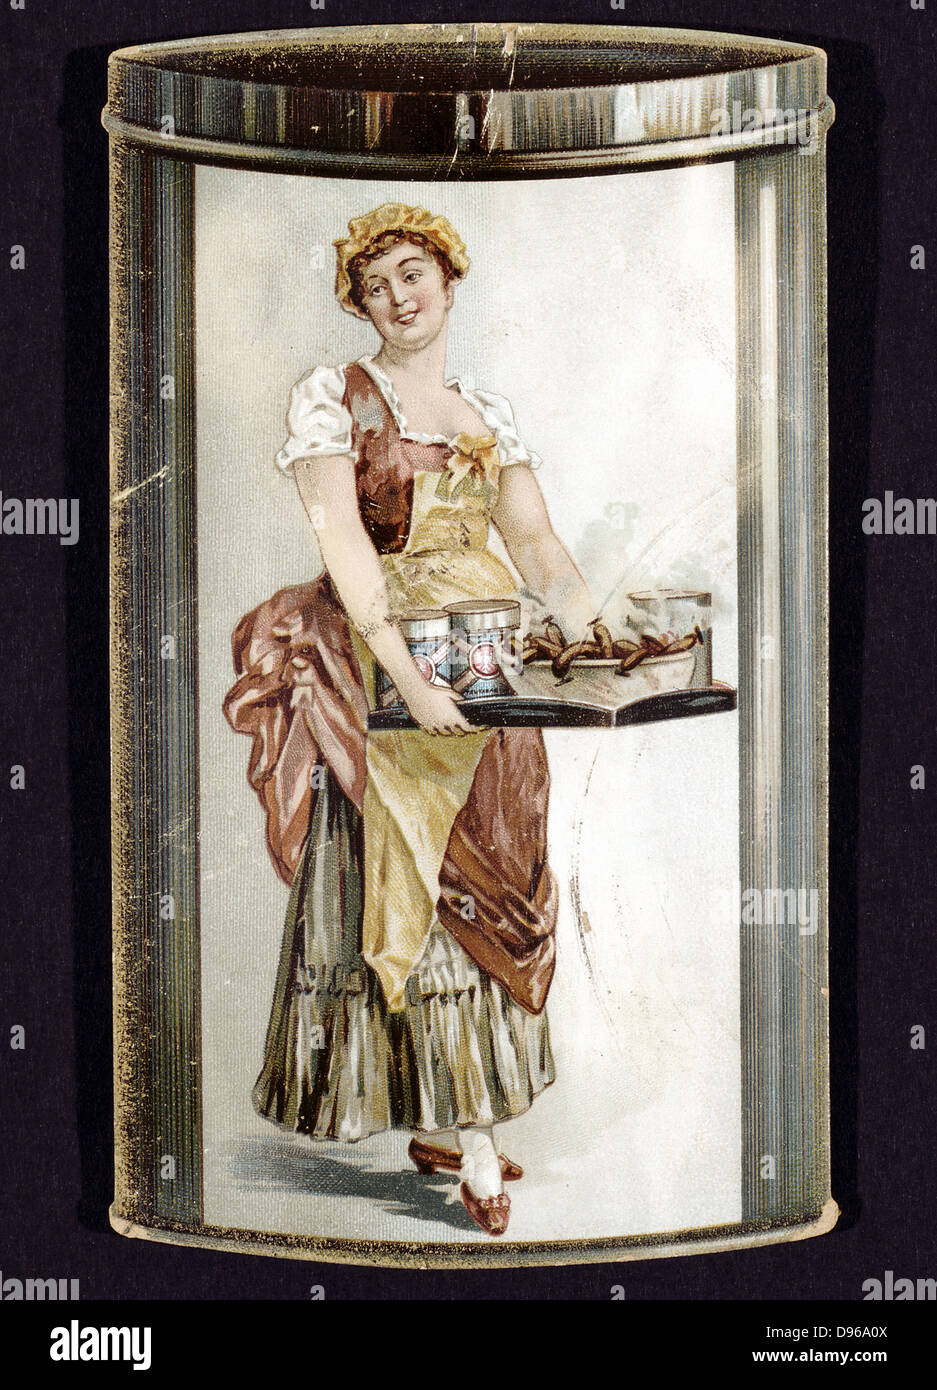 Inversione di marcia della scheda commerciale per le conserve di Wurstel prodotta da Heinrich Bauer di Frankfurt am Main c1895, sorride mostrando la ragazza con il vassoio per la cottura a vapore di salsicce. Foto Stock